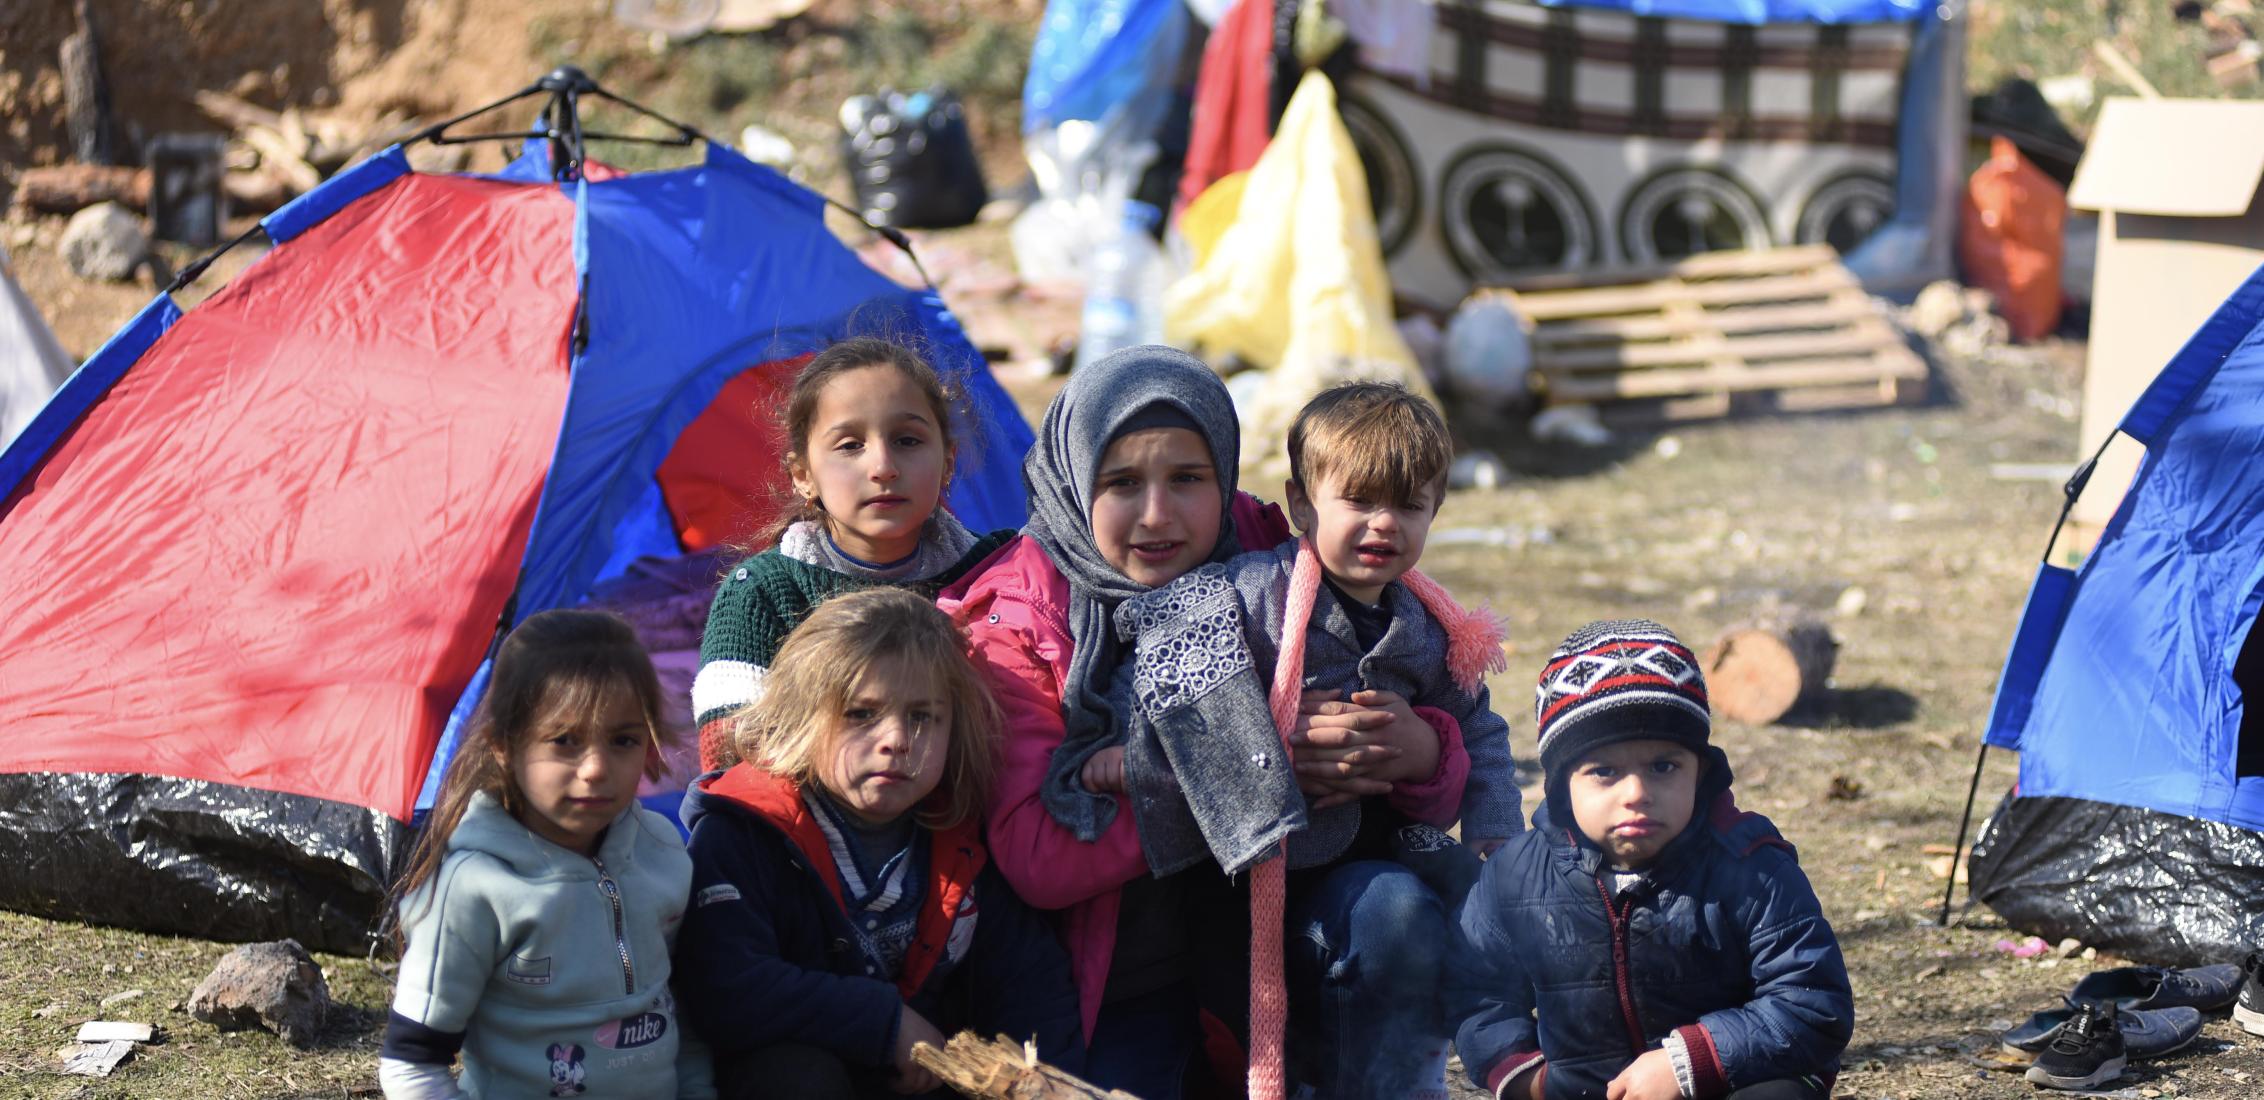 UN0781448/Ölçer: Una familia de refugiados sirios que sobrevivió al terremoto de magnitud 7,7 y a las decenas de réplicas que sacudieron el sureste de Turquía y Siria el 6 de febrero de 2023 se refugia en un lugar provisional en la provincia de Onikişubat, Kahramanmaraş.